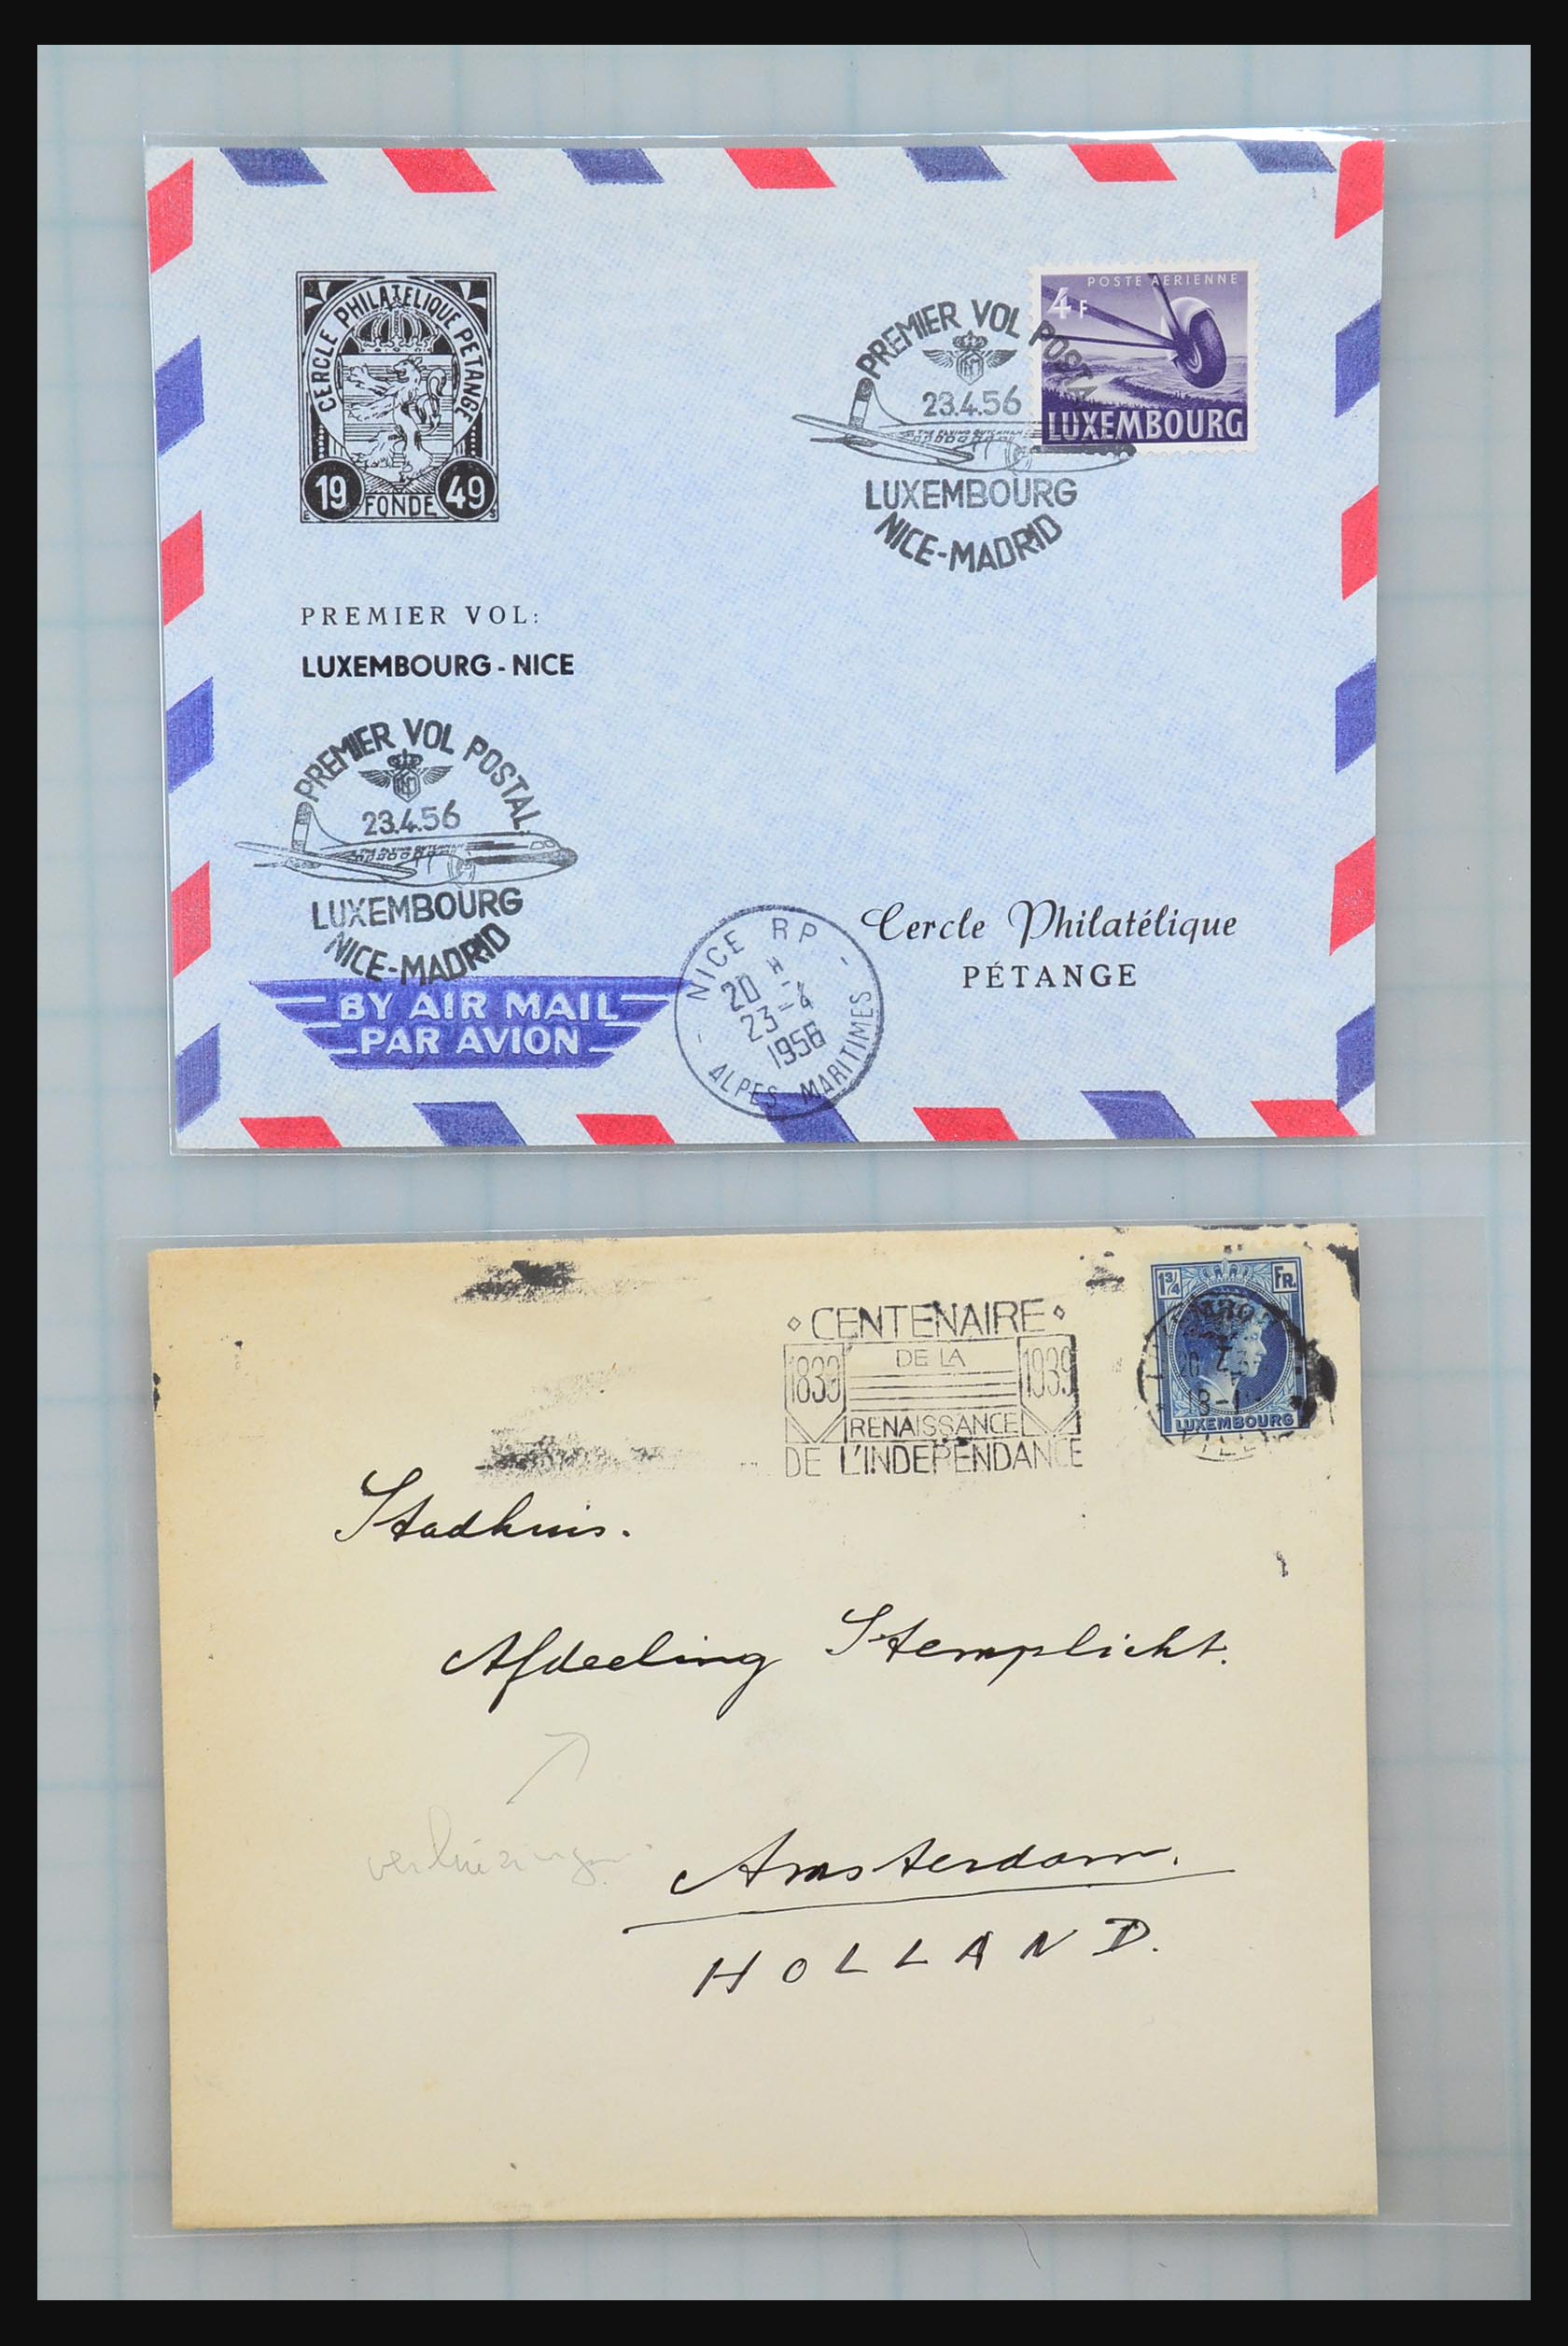 31358 071 - 31358 Portugal/Luxemburg/Griekenland brieven 1880-1960.